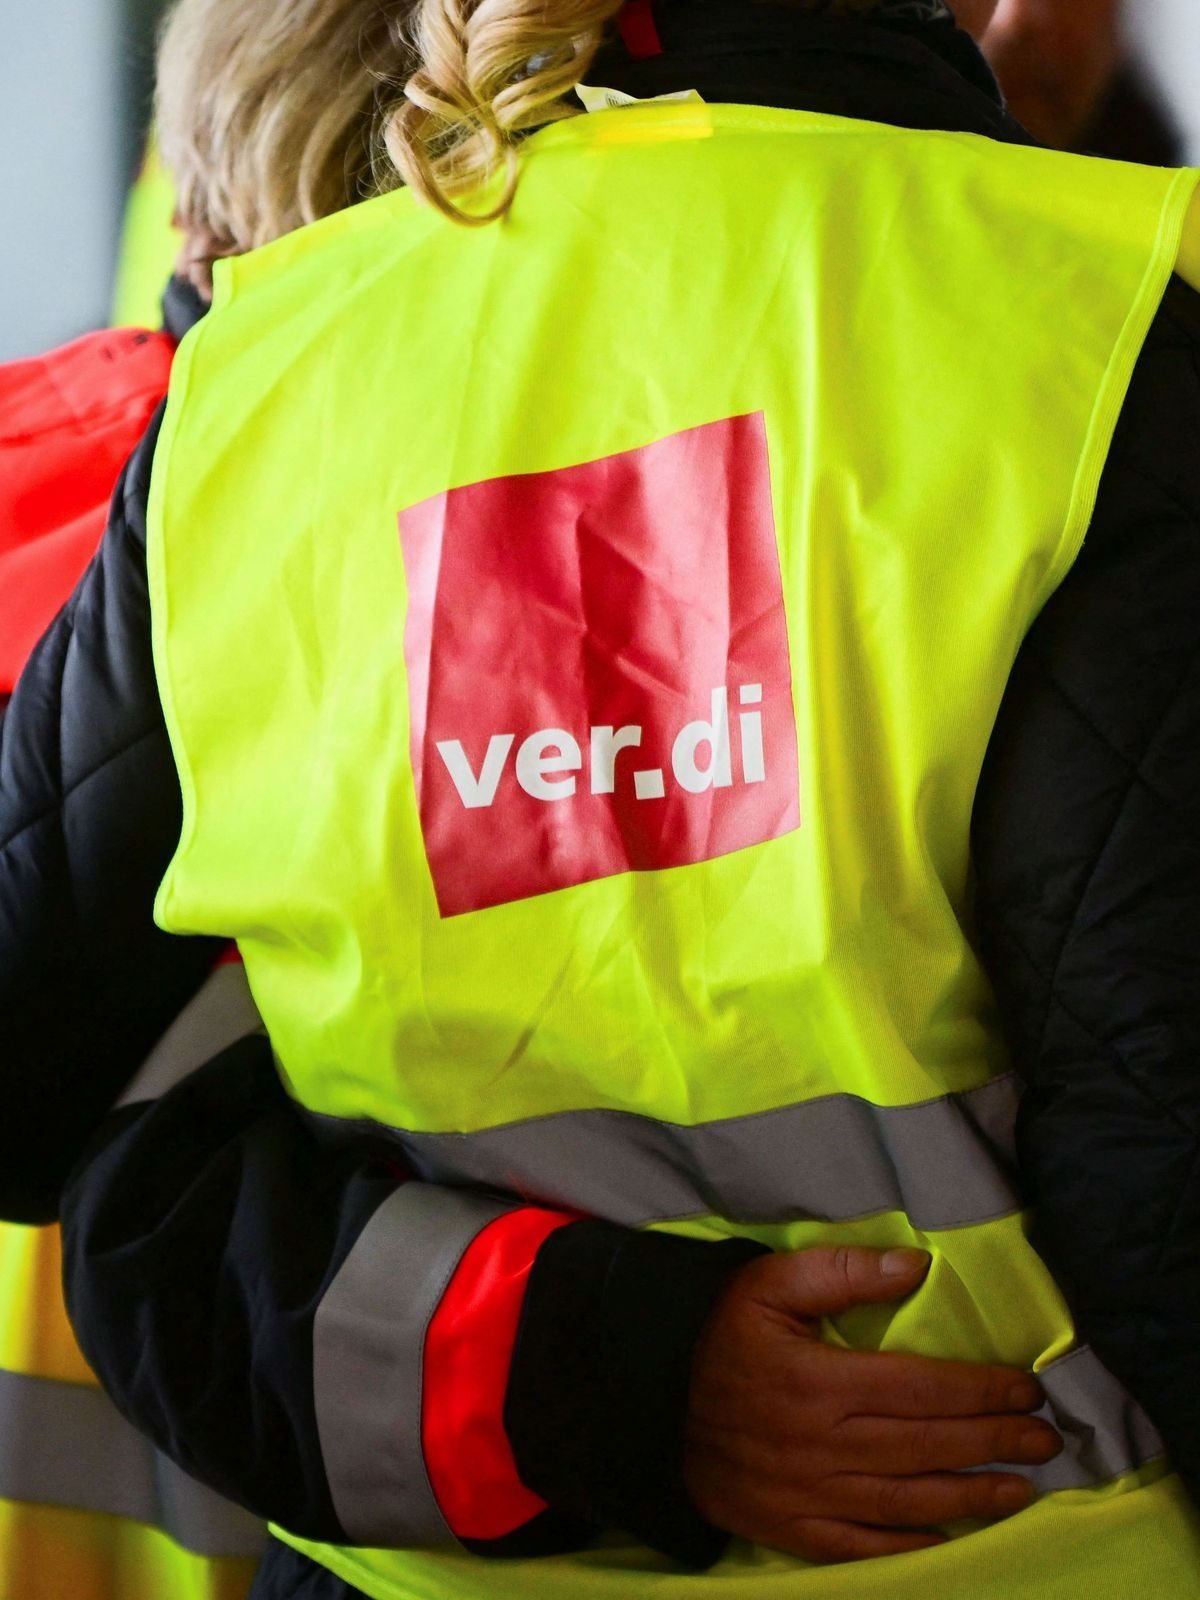 Verdi bestreikt erstmals das Kaufland-Logistikzentrum Barsinghausen